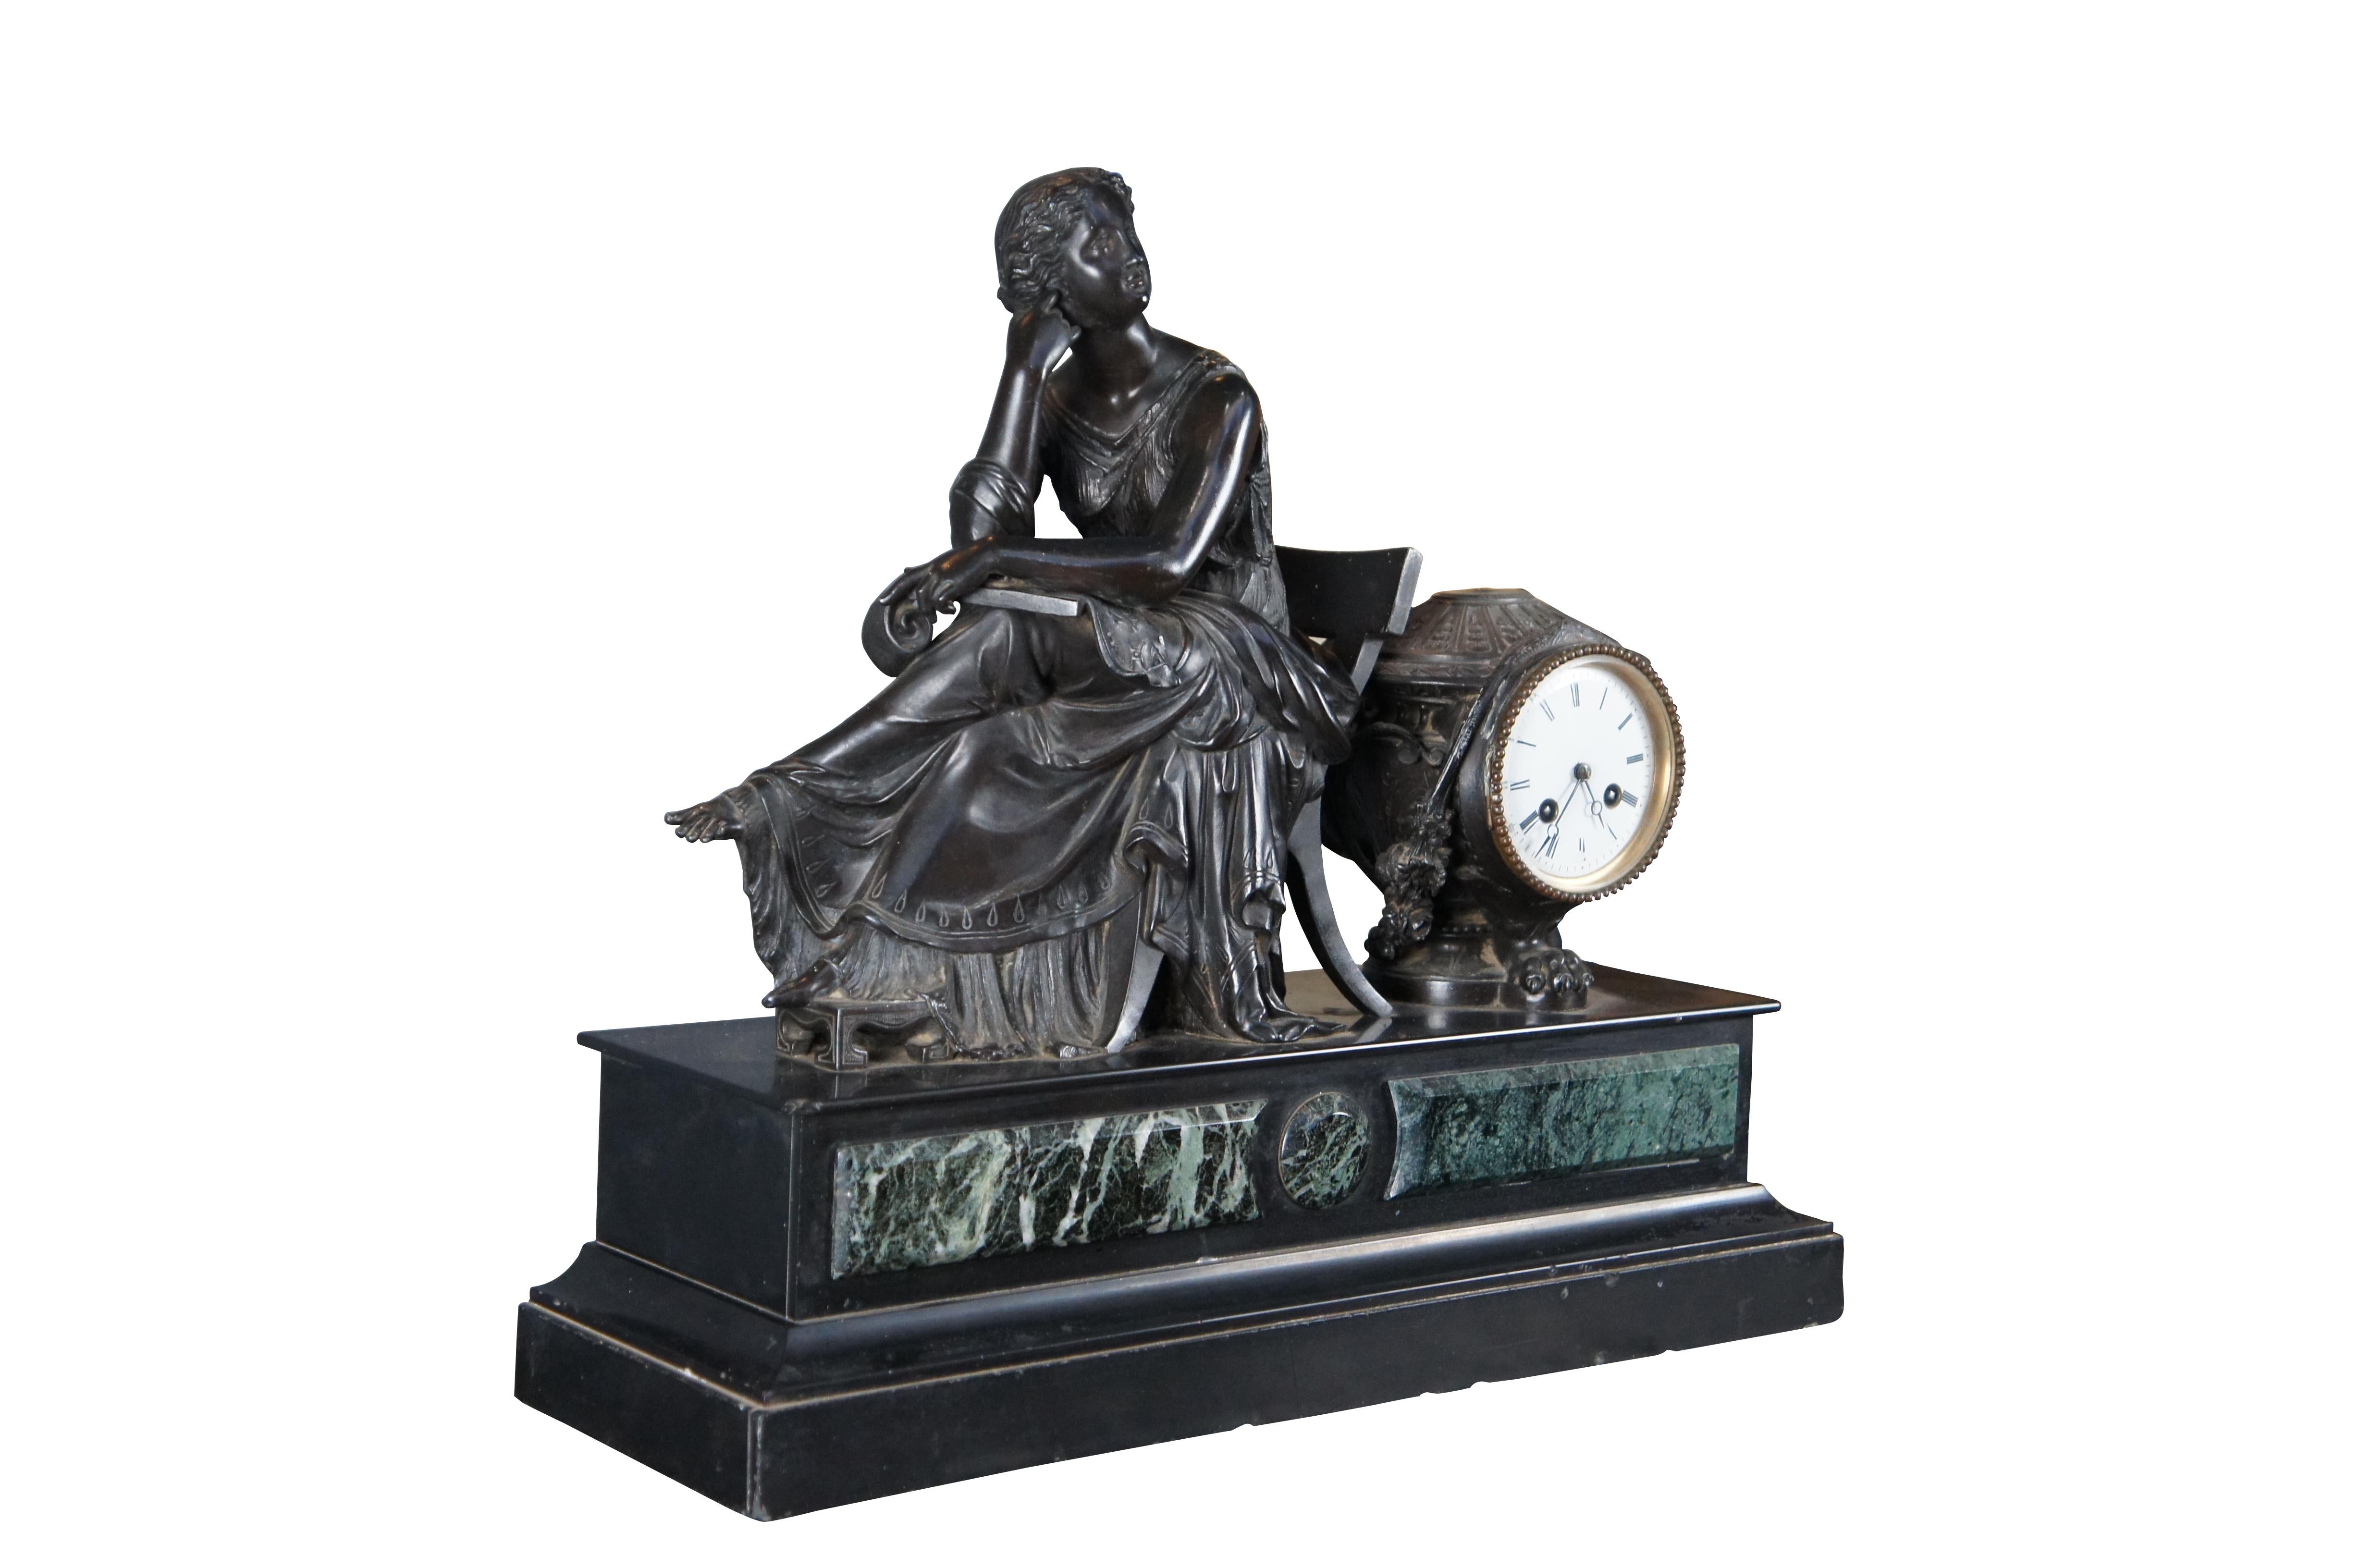 Une belle horloge de cheminée française du 19ème siècle. Représentation d'une femme assise dans la position du penseur. Elle porte une grande robe fluide et est assise sur une chaise Klismos, les pieds surélevés par rapport à un tabouret. Derrière